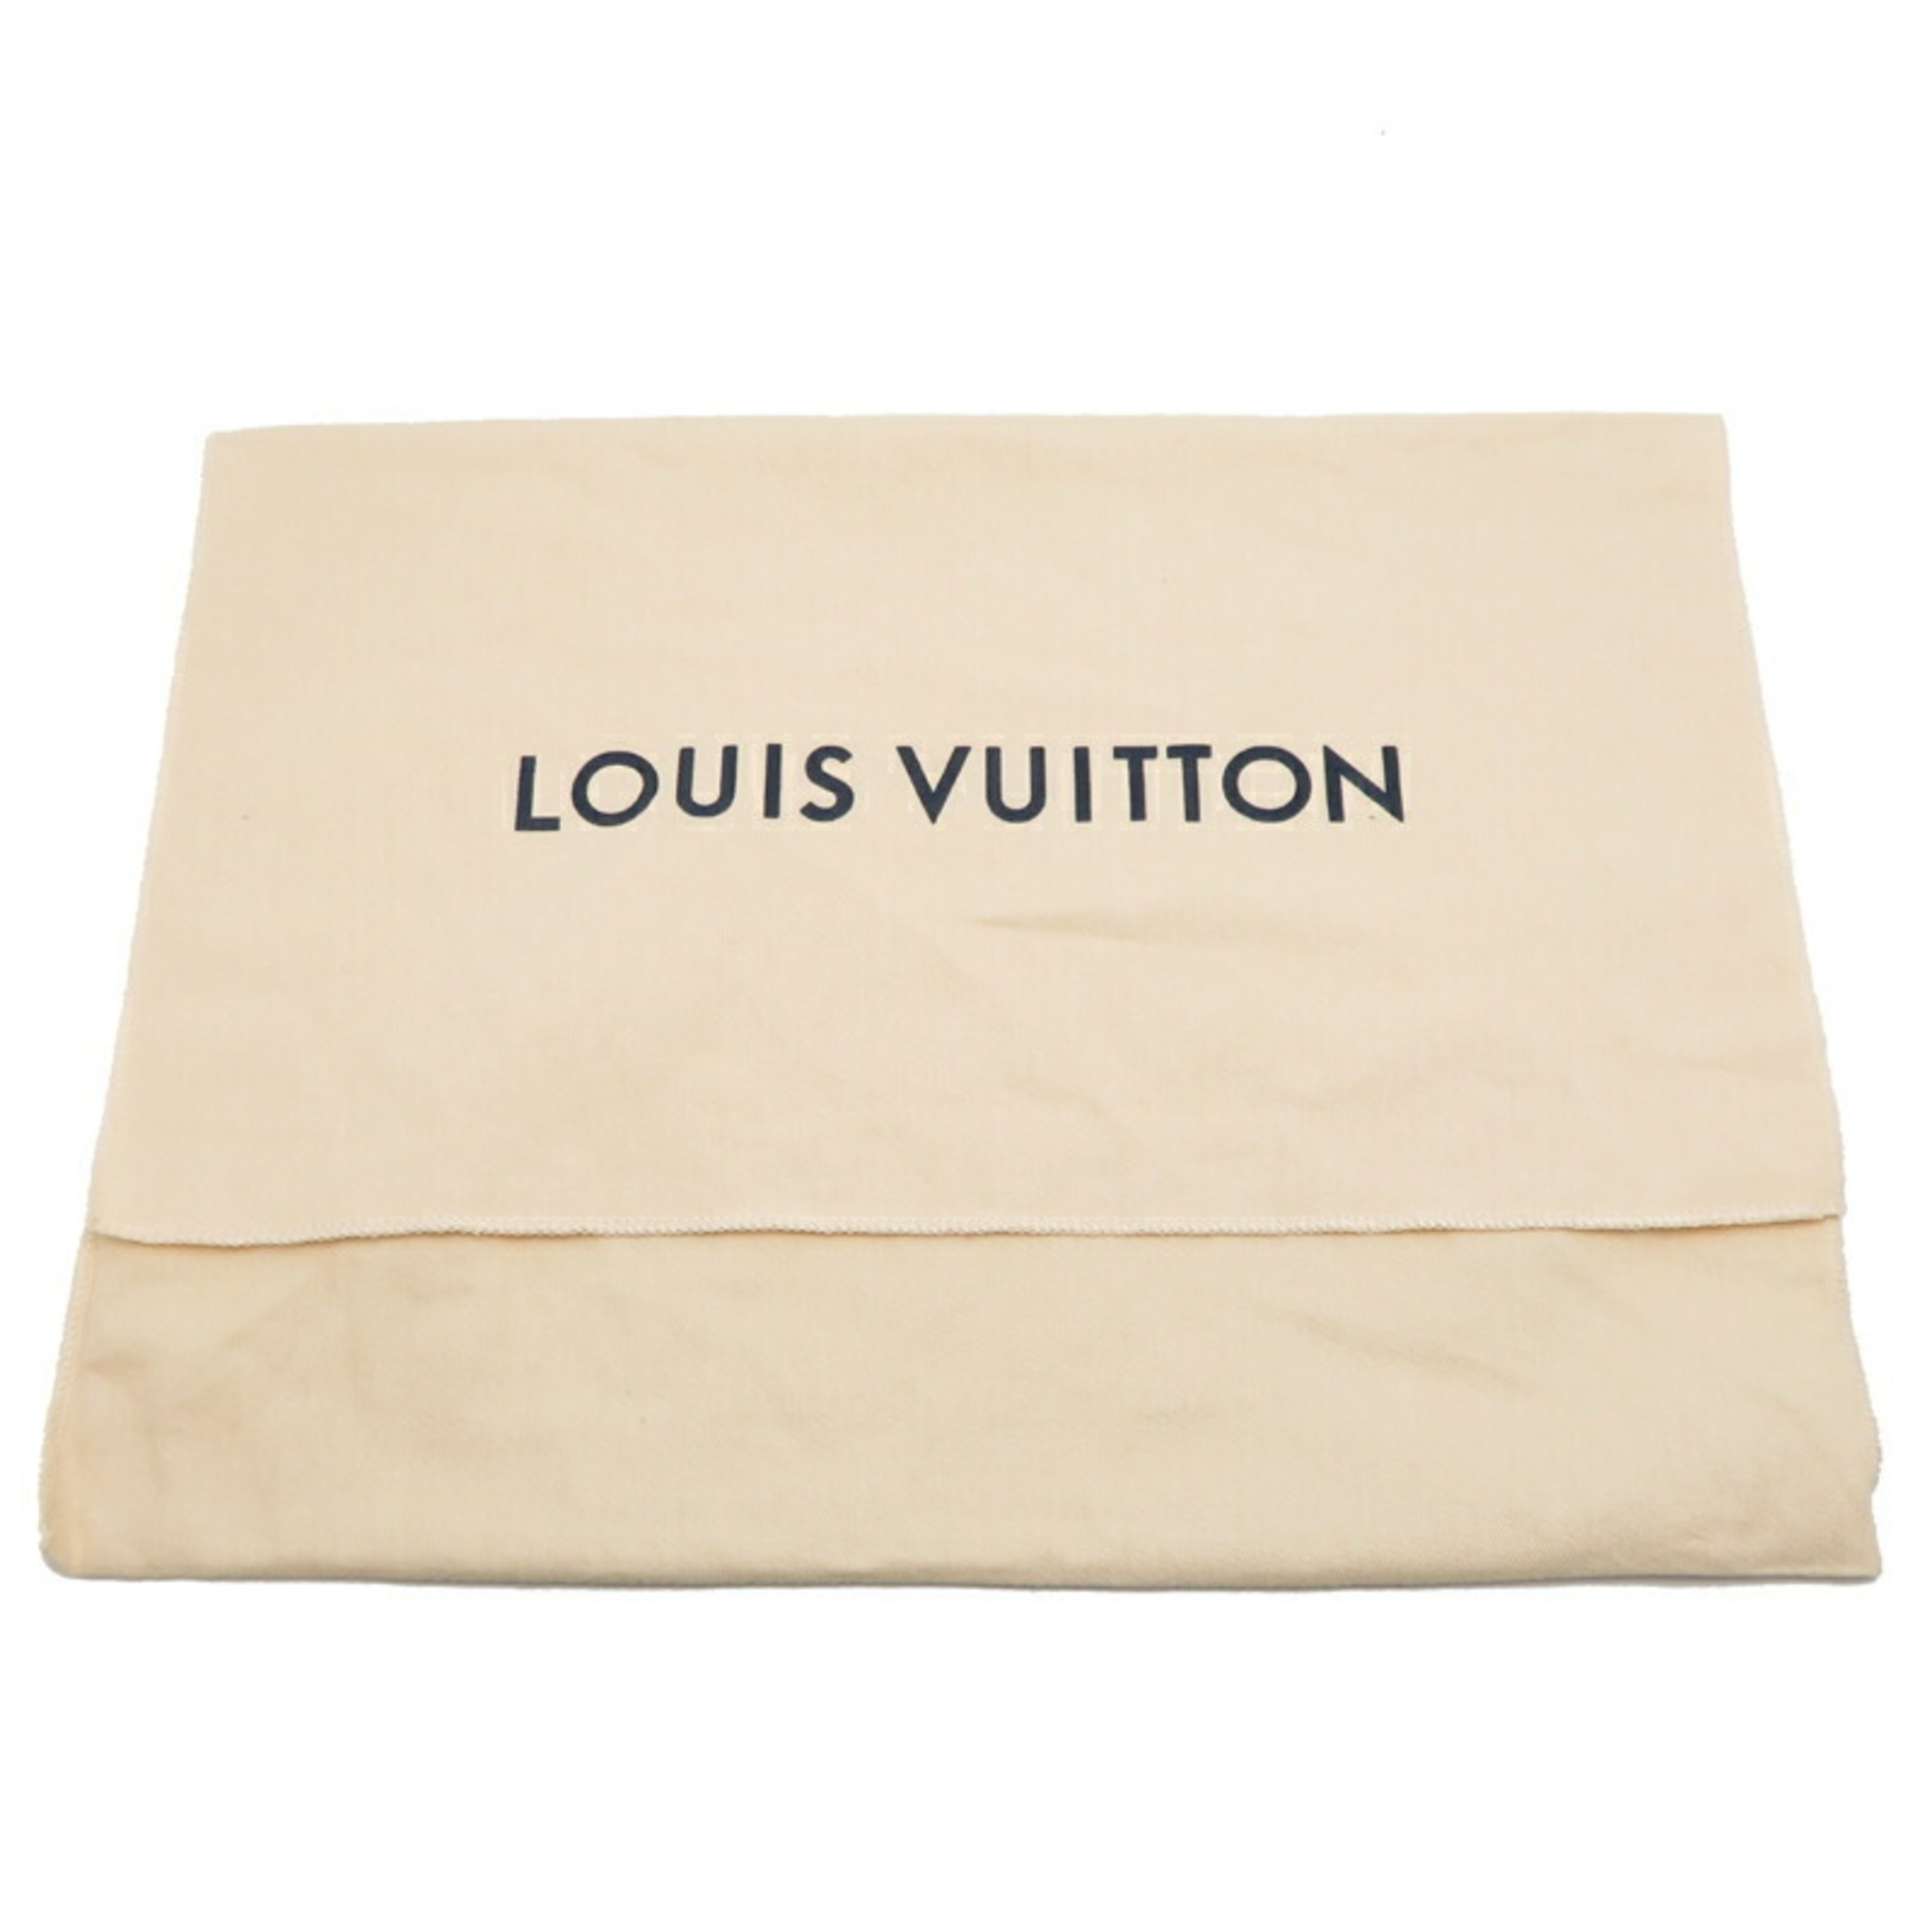 Louis Vuitton Alma PM Women's Handbag M40302 Epi Noir (Black)